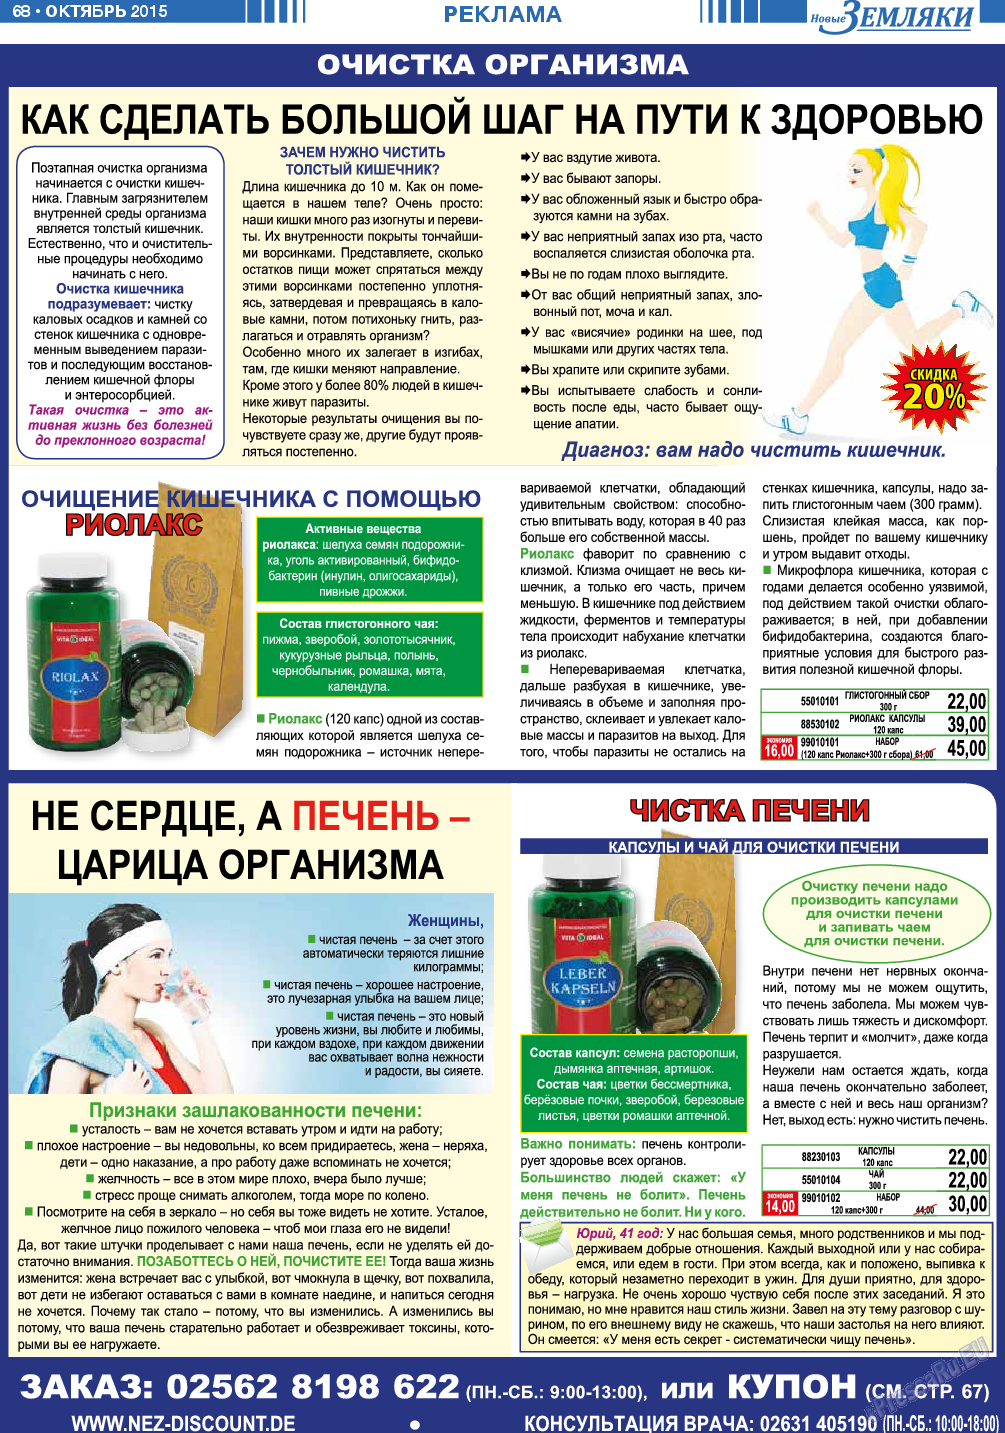 Новые Земляки, газета. 2015 №10 стр.68